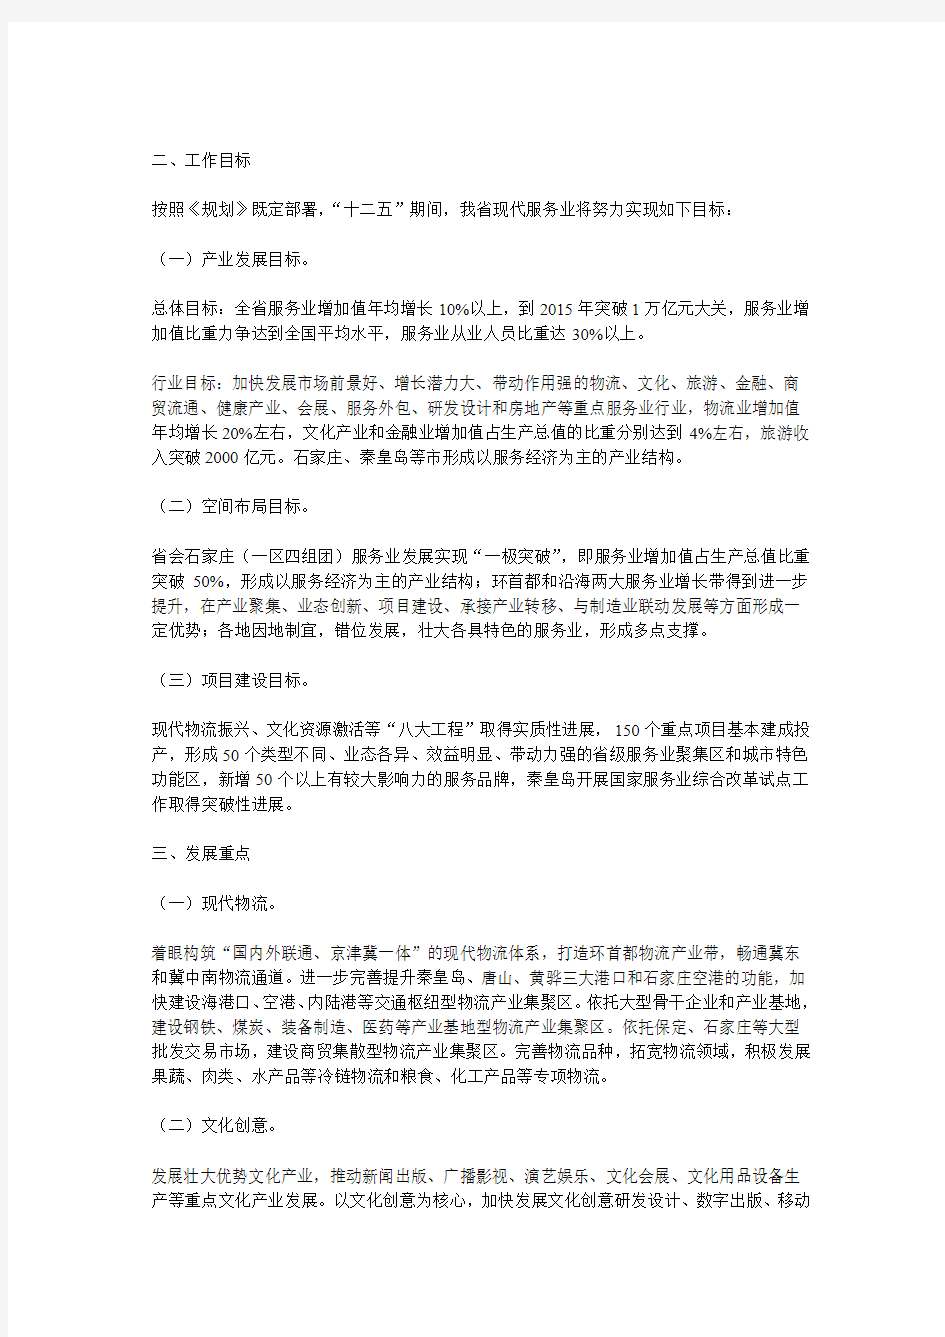 河北省现代服务业“十二五”发展规划实施意见